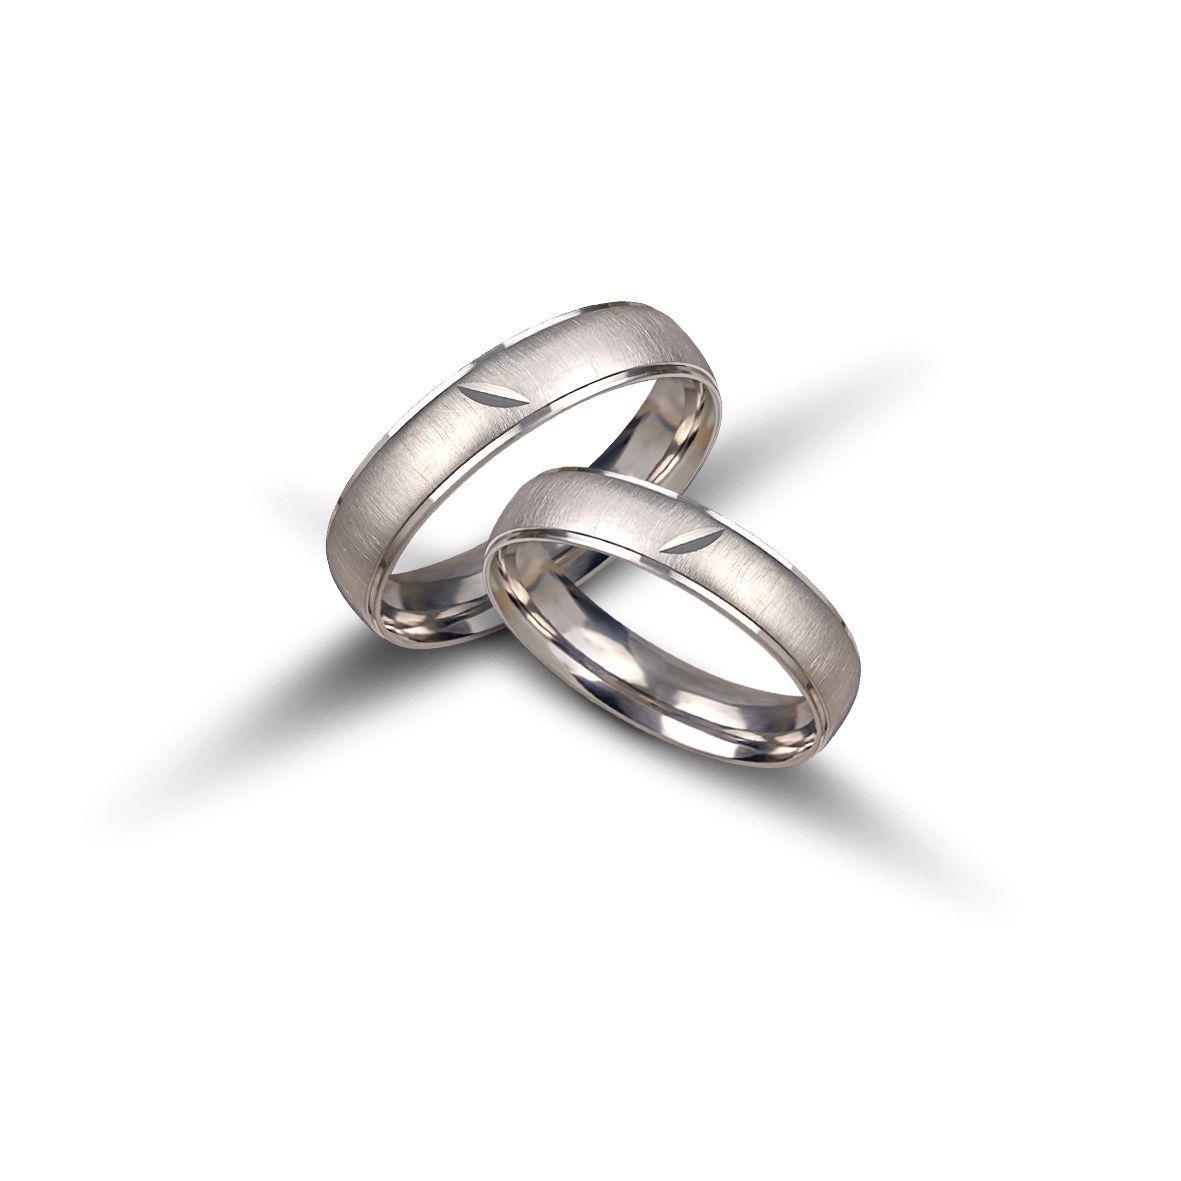 White gold wedding rings 5mm  (code VK2011/50)